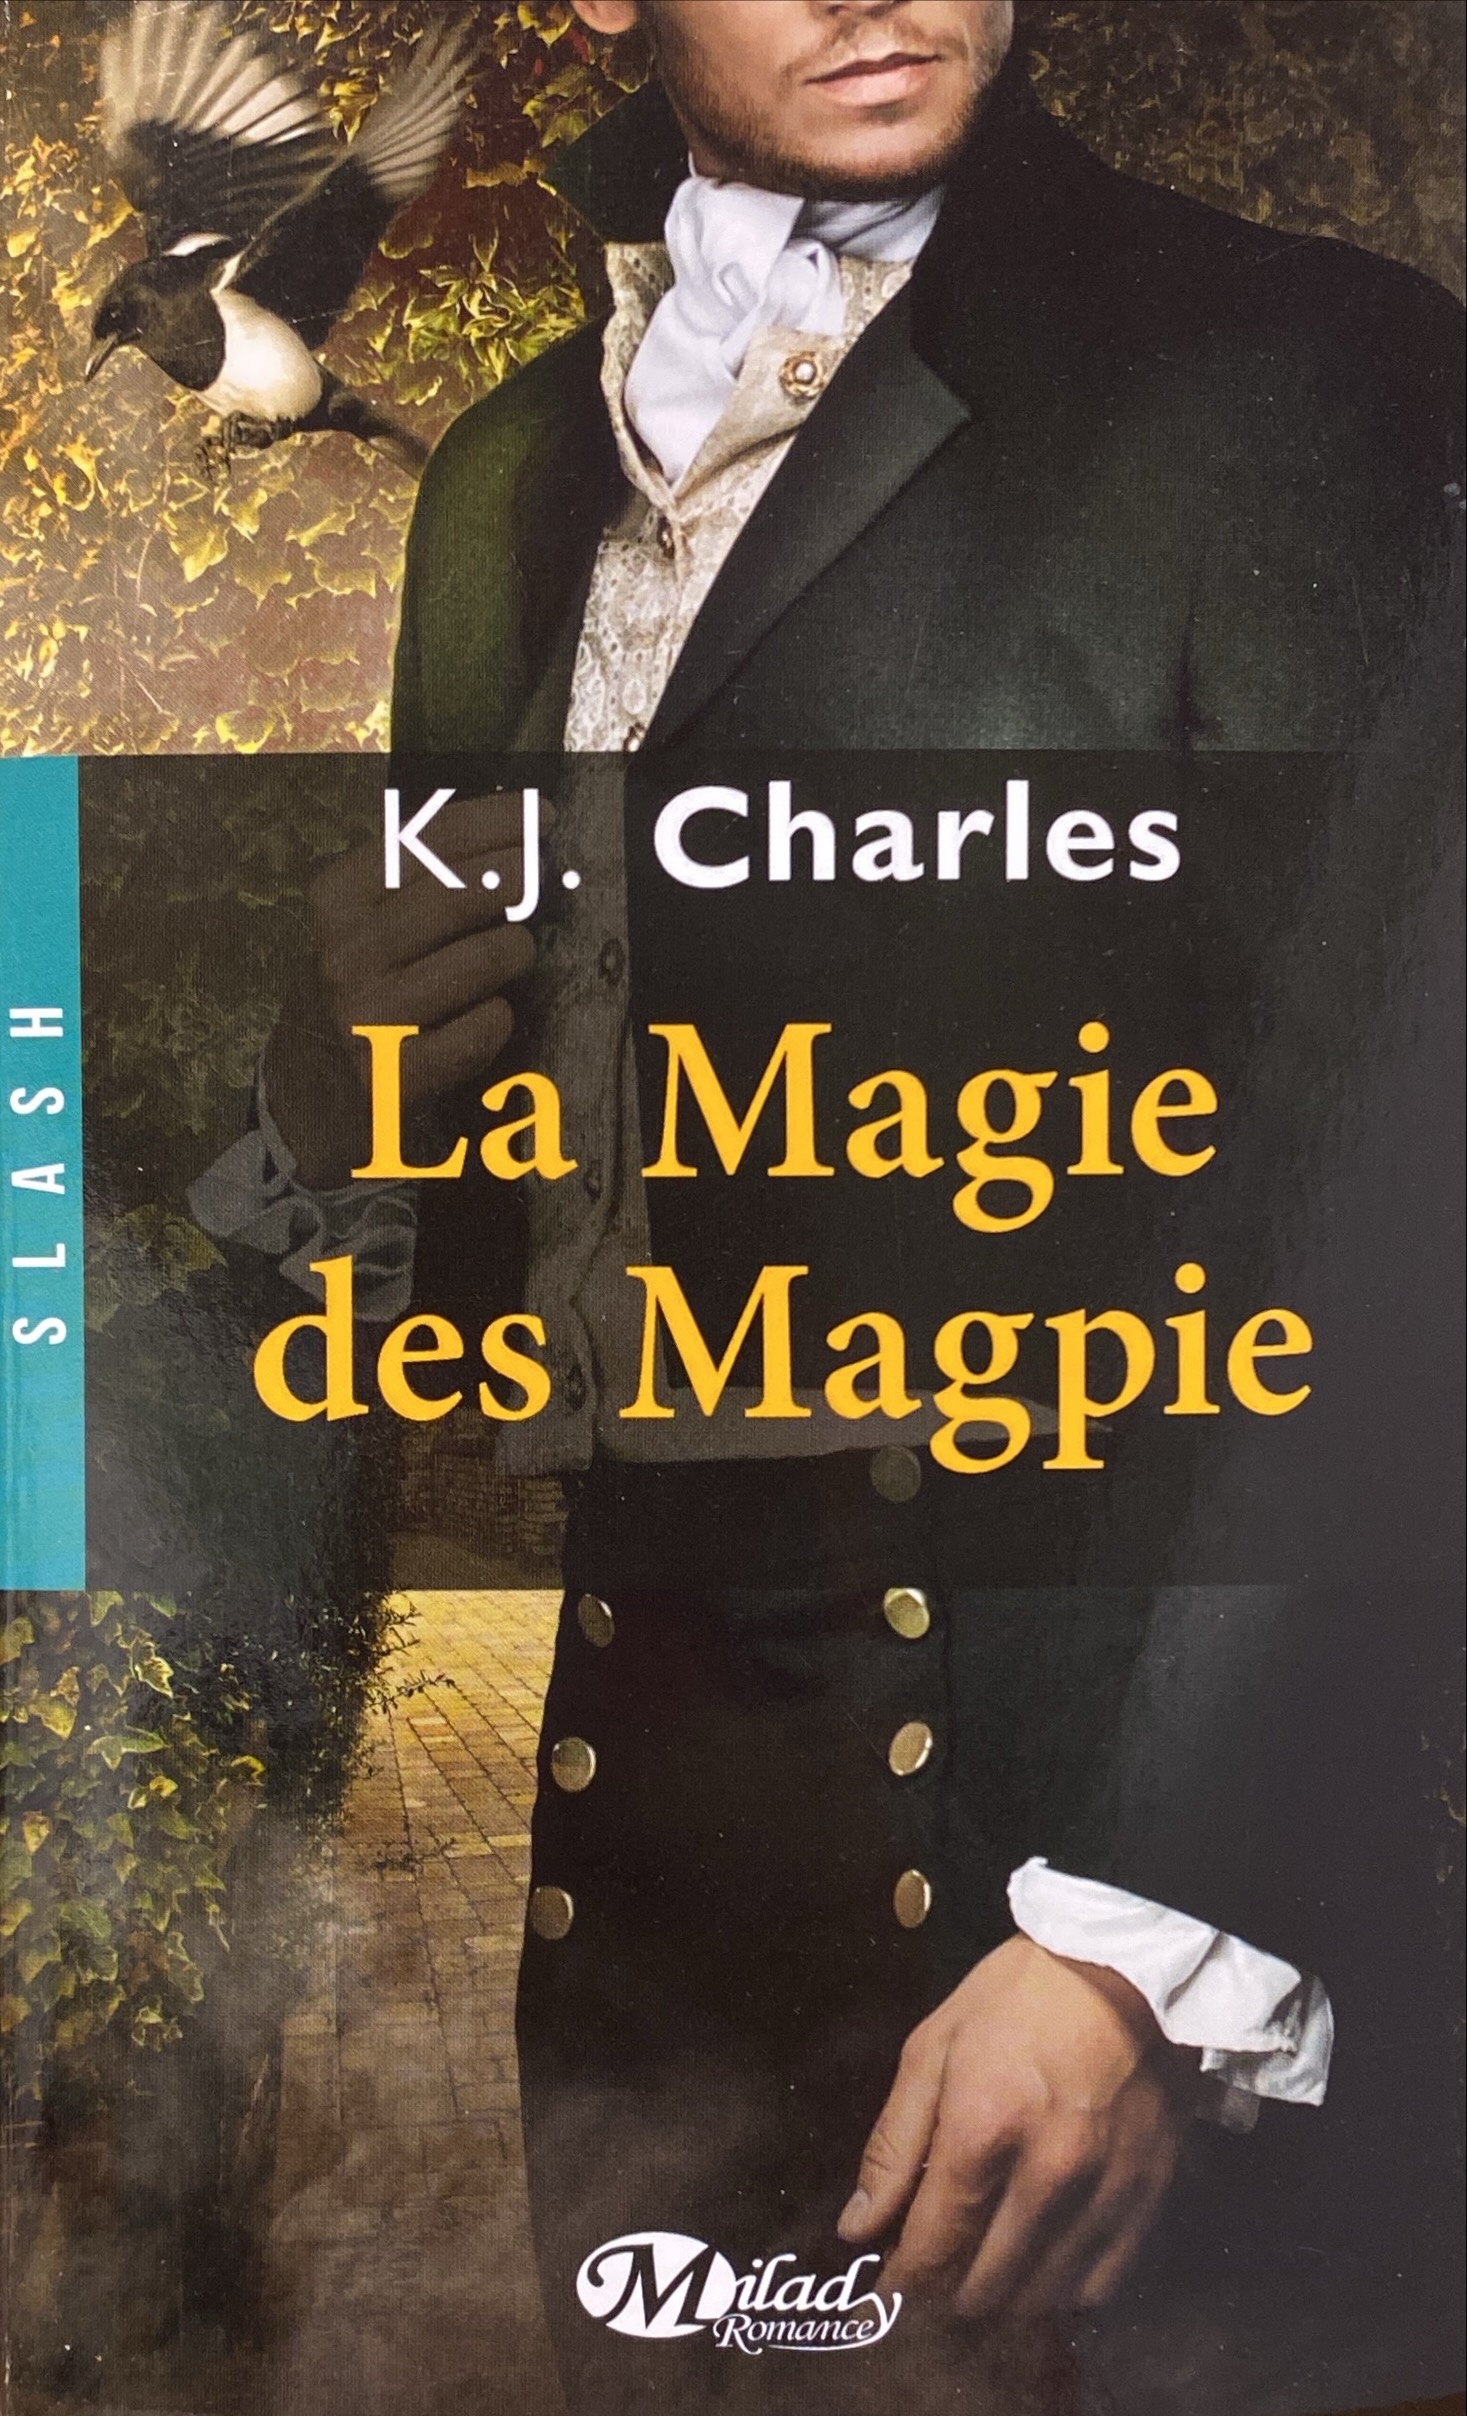 La magie des Magpie K. J. Charles